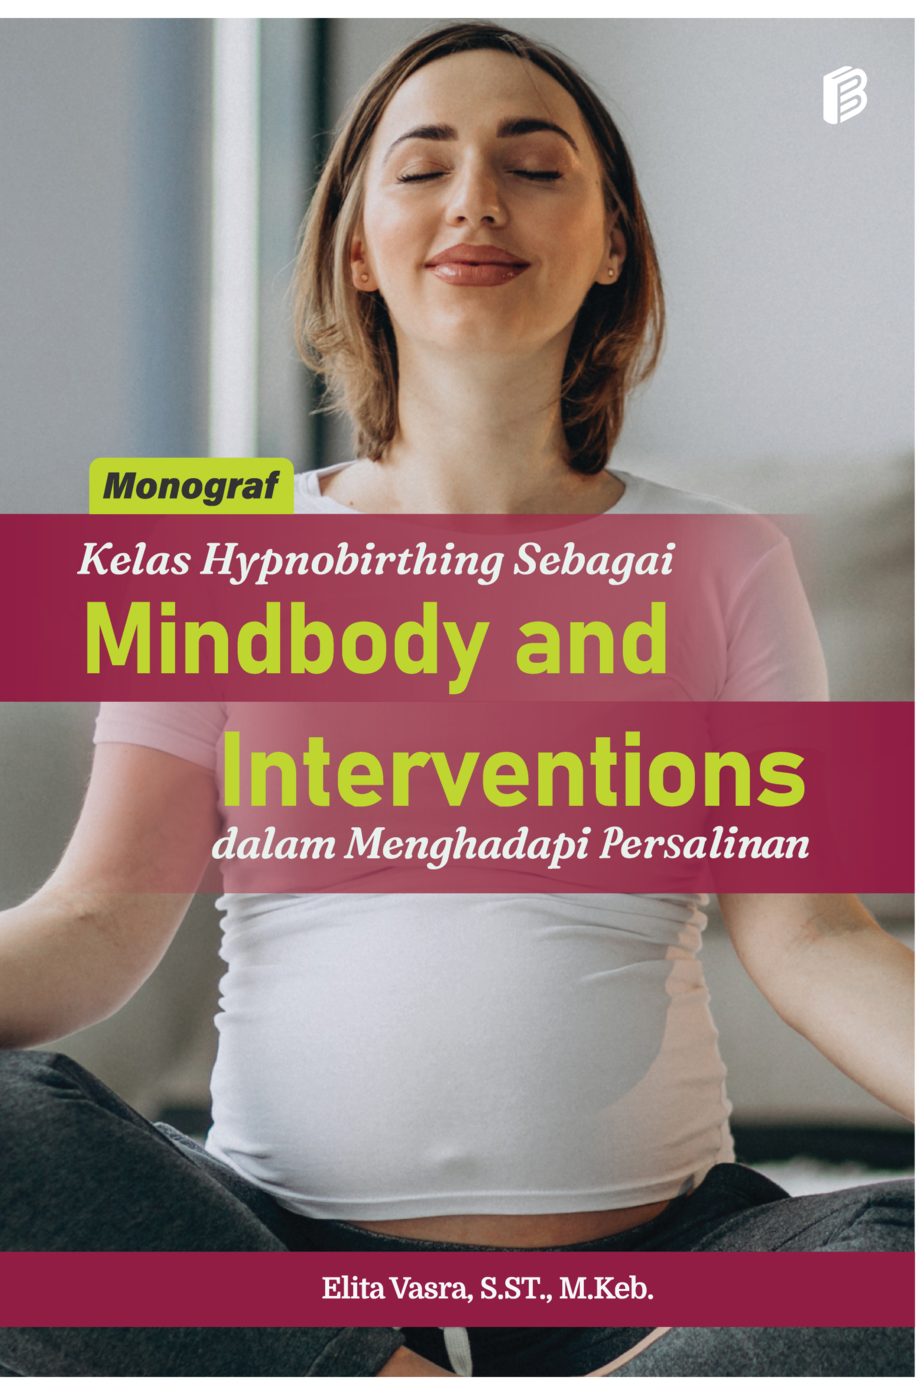 cover/(12-10-2022)kelas-hypnobirthing-sebagai-mindbody-and-intervention-dalam-menghadapi-persalinan.png